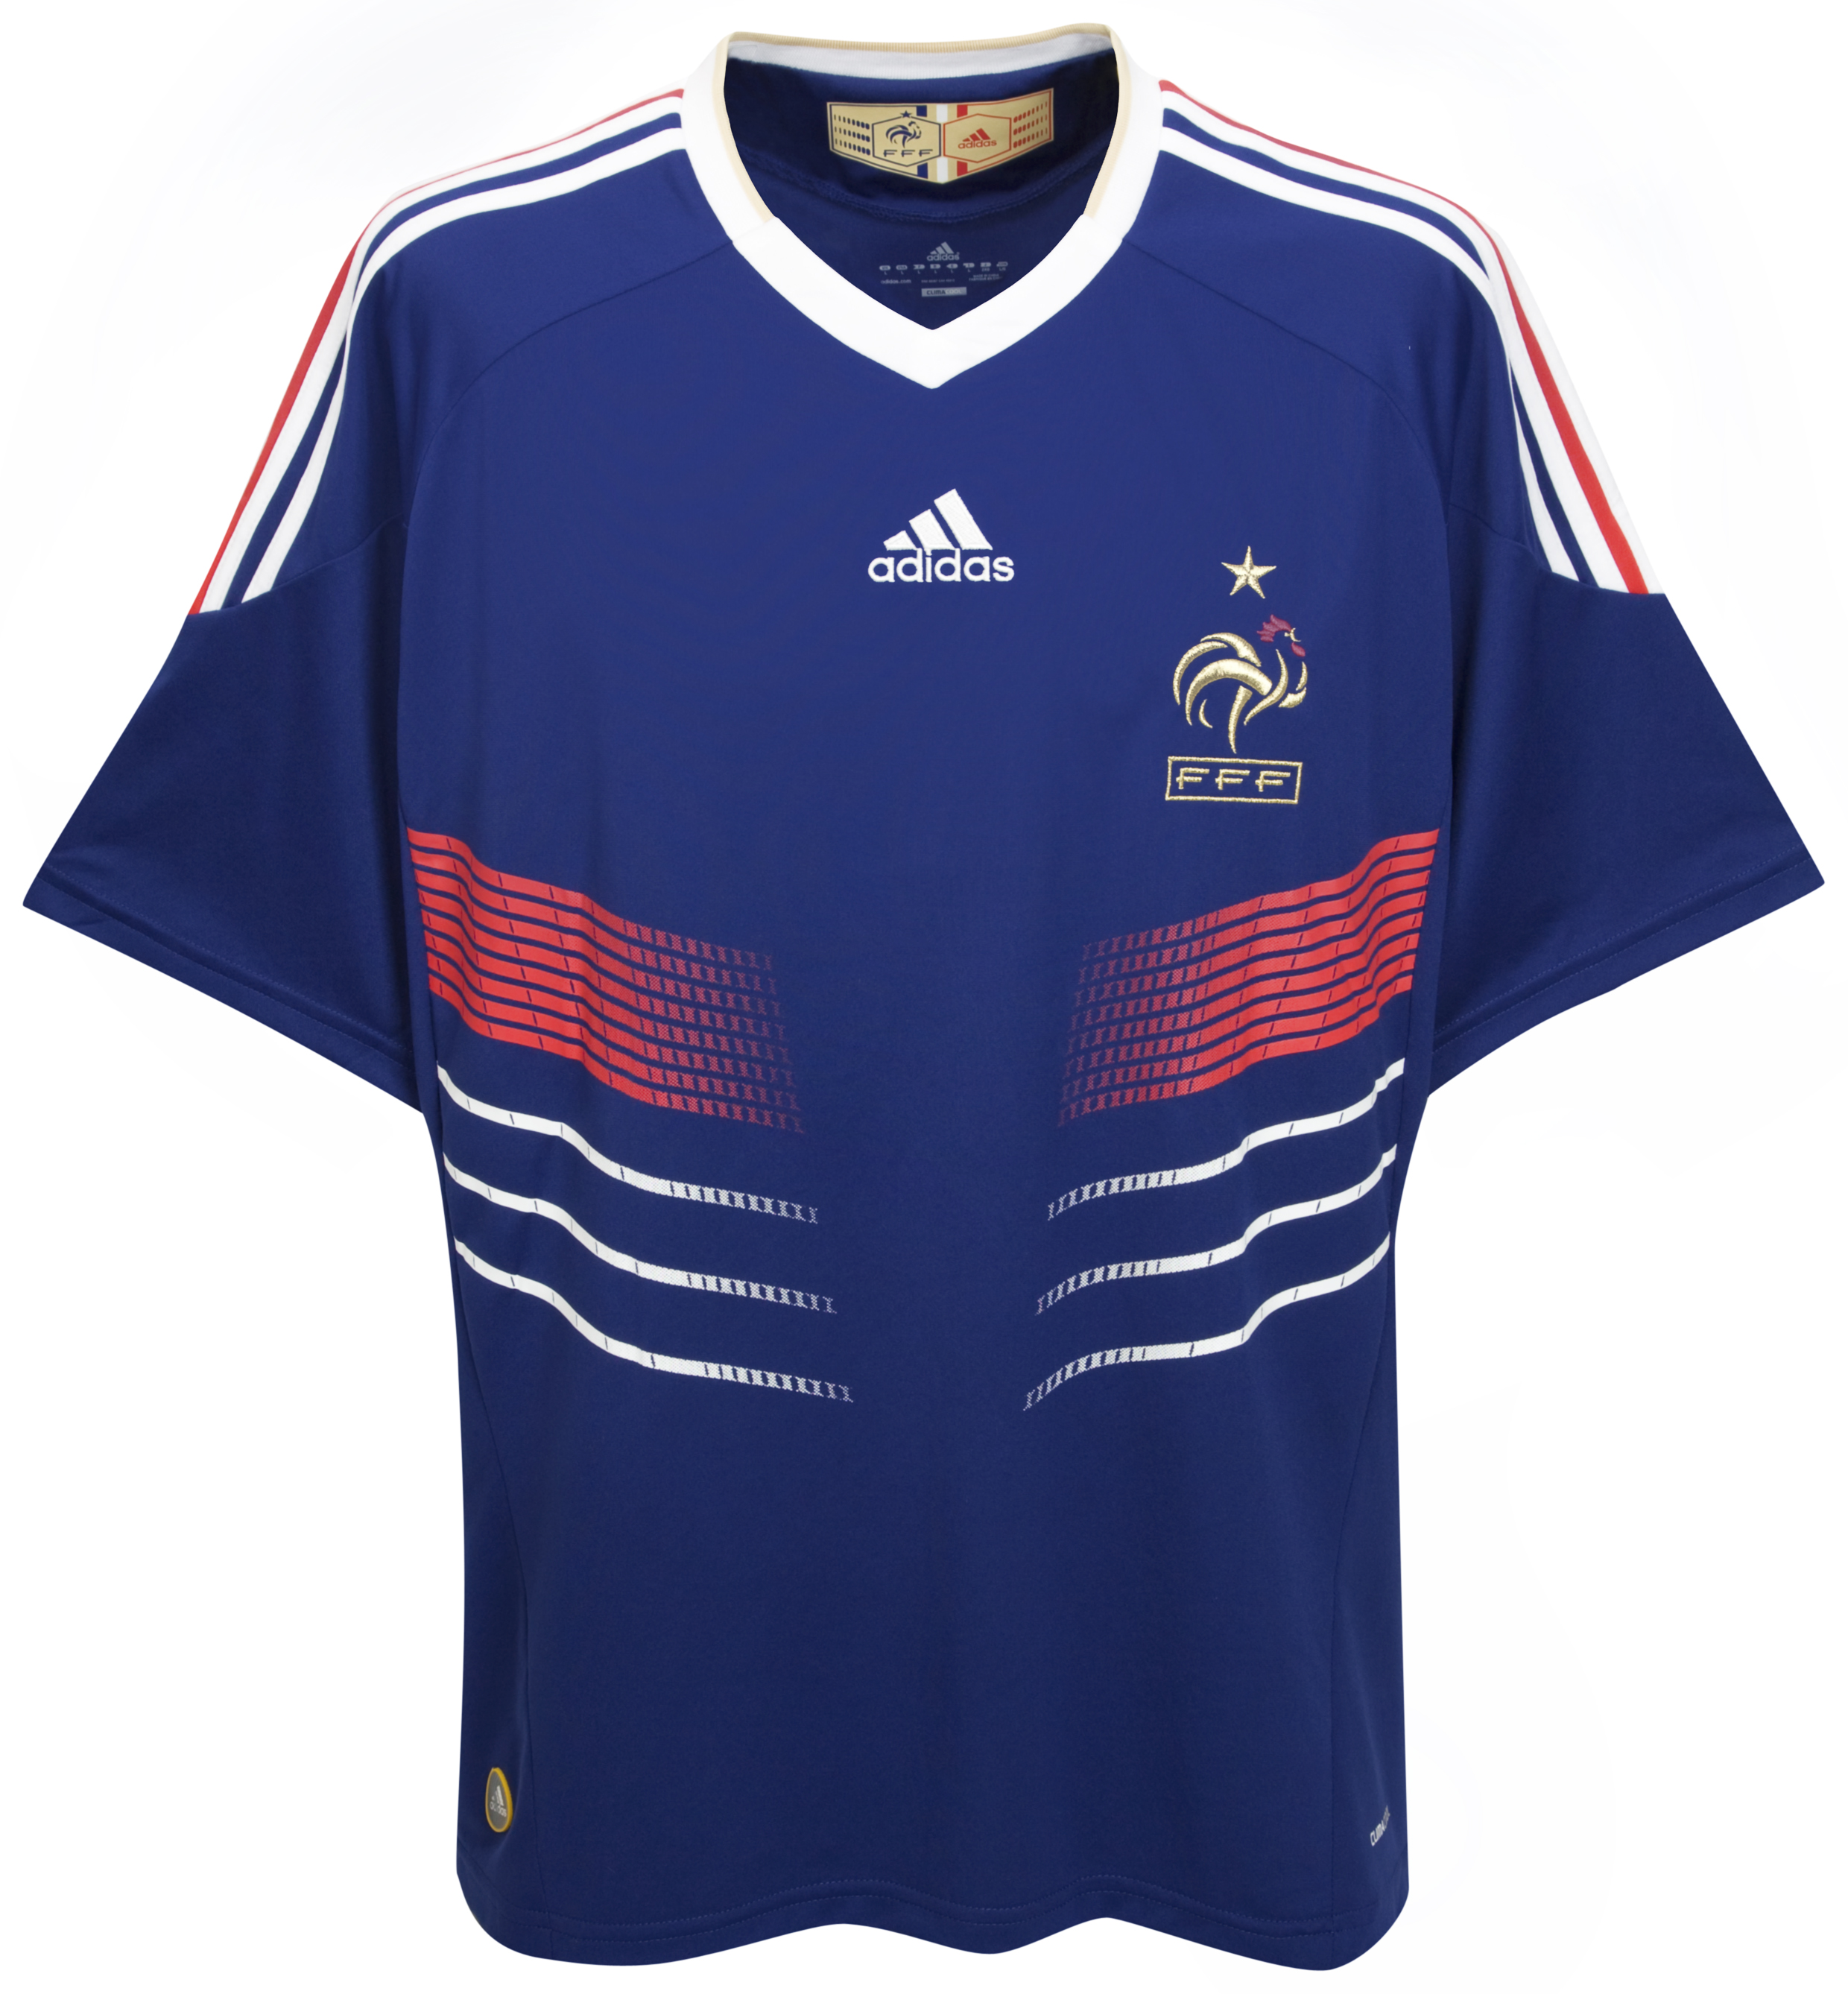 ملابس المنتخبات لكأس العالم ‎(2010)‎ Cfc-63740